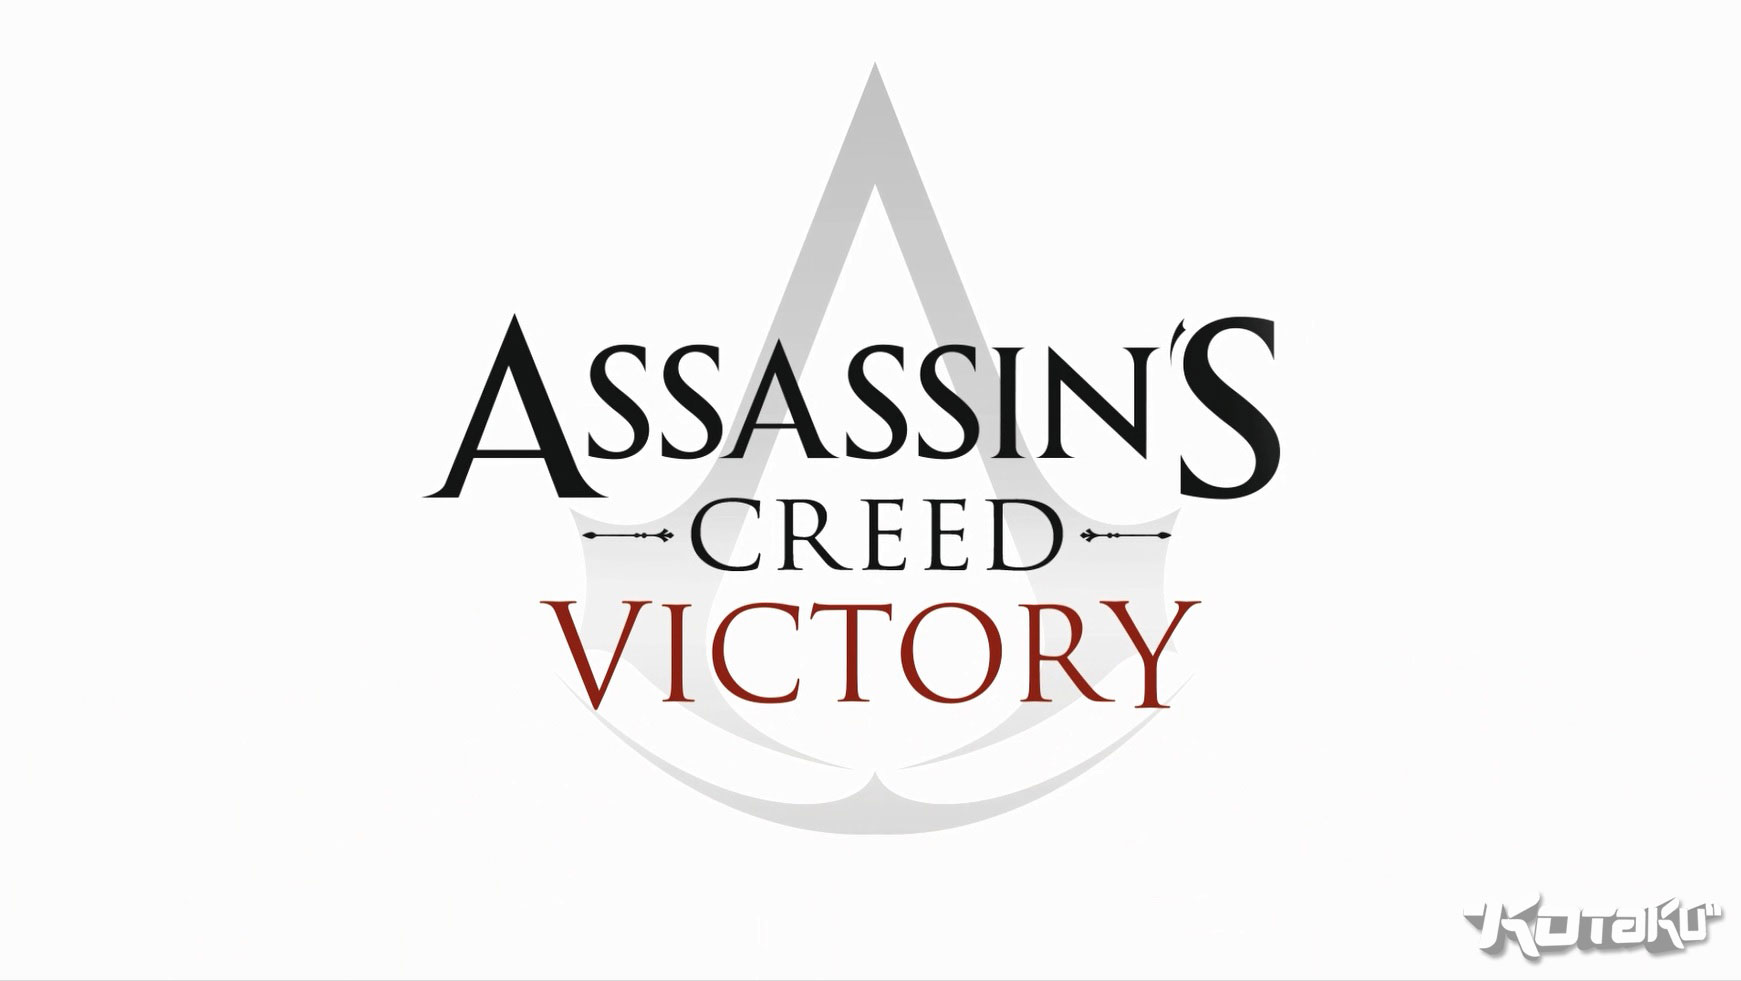 Assassin's Creed 0212 victory kotaku